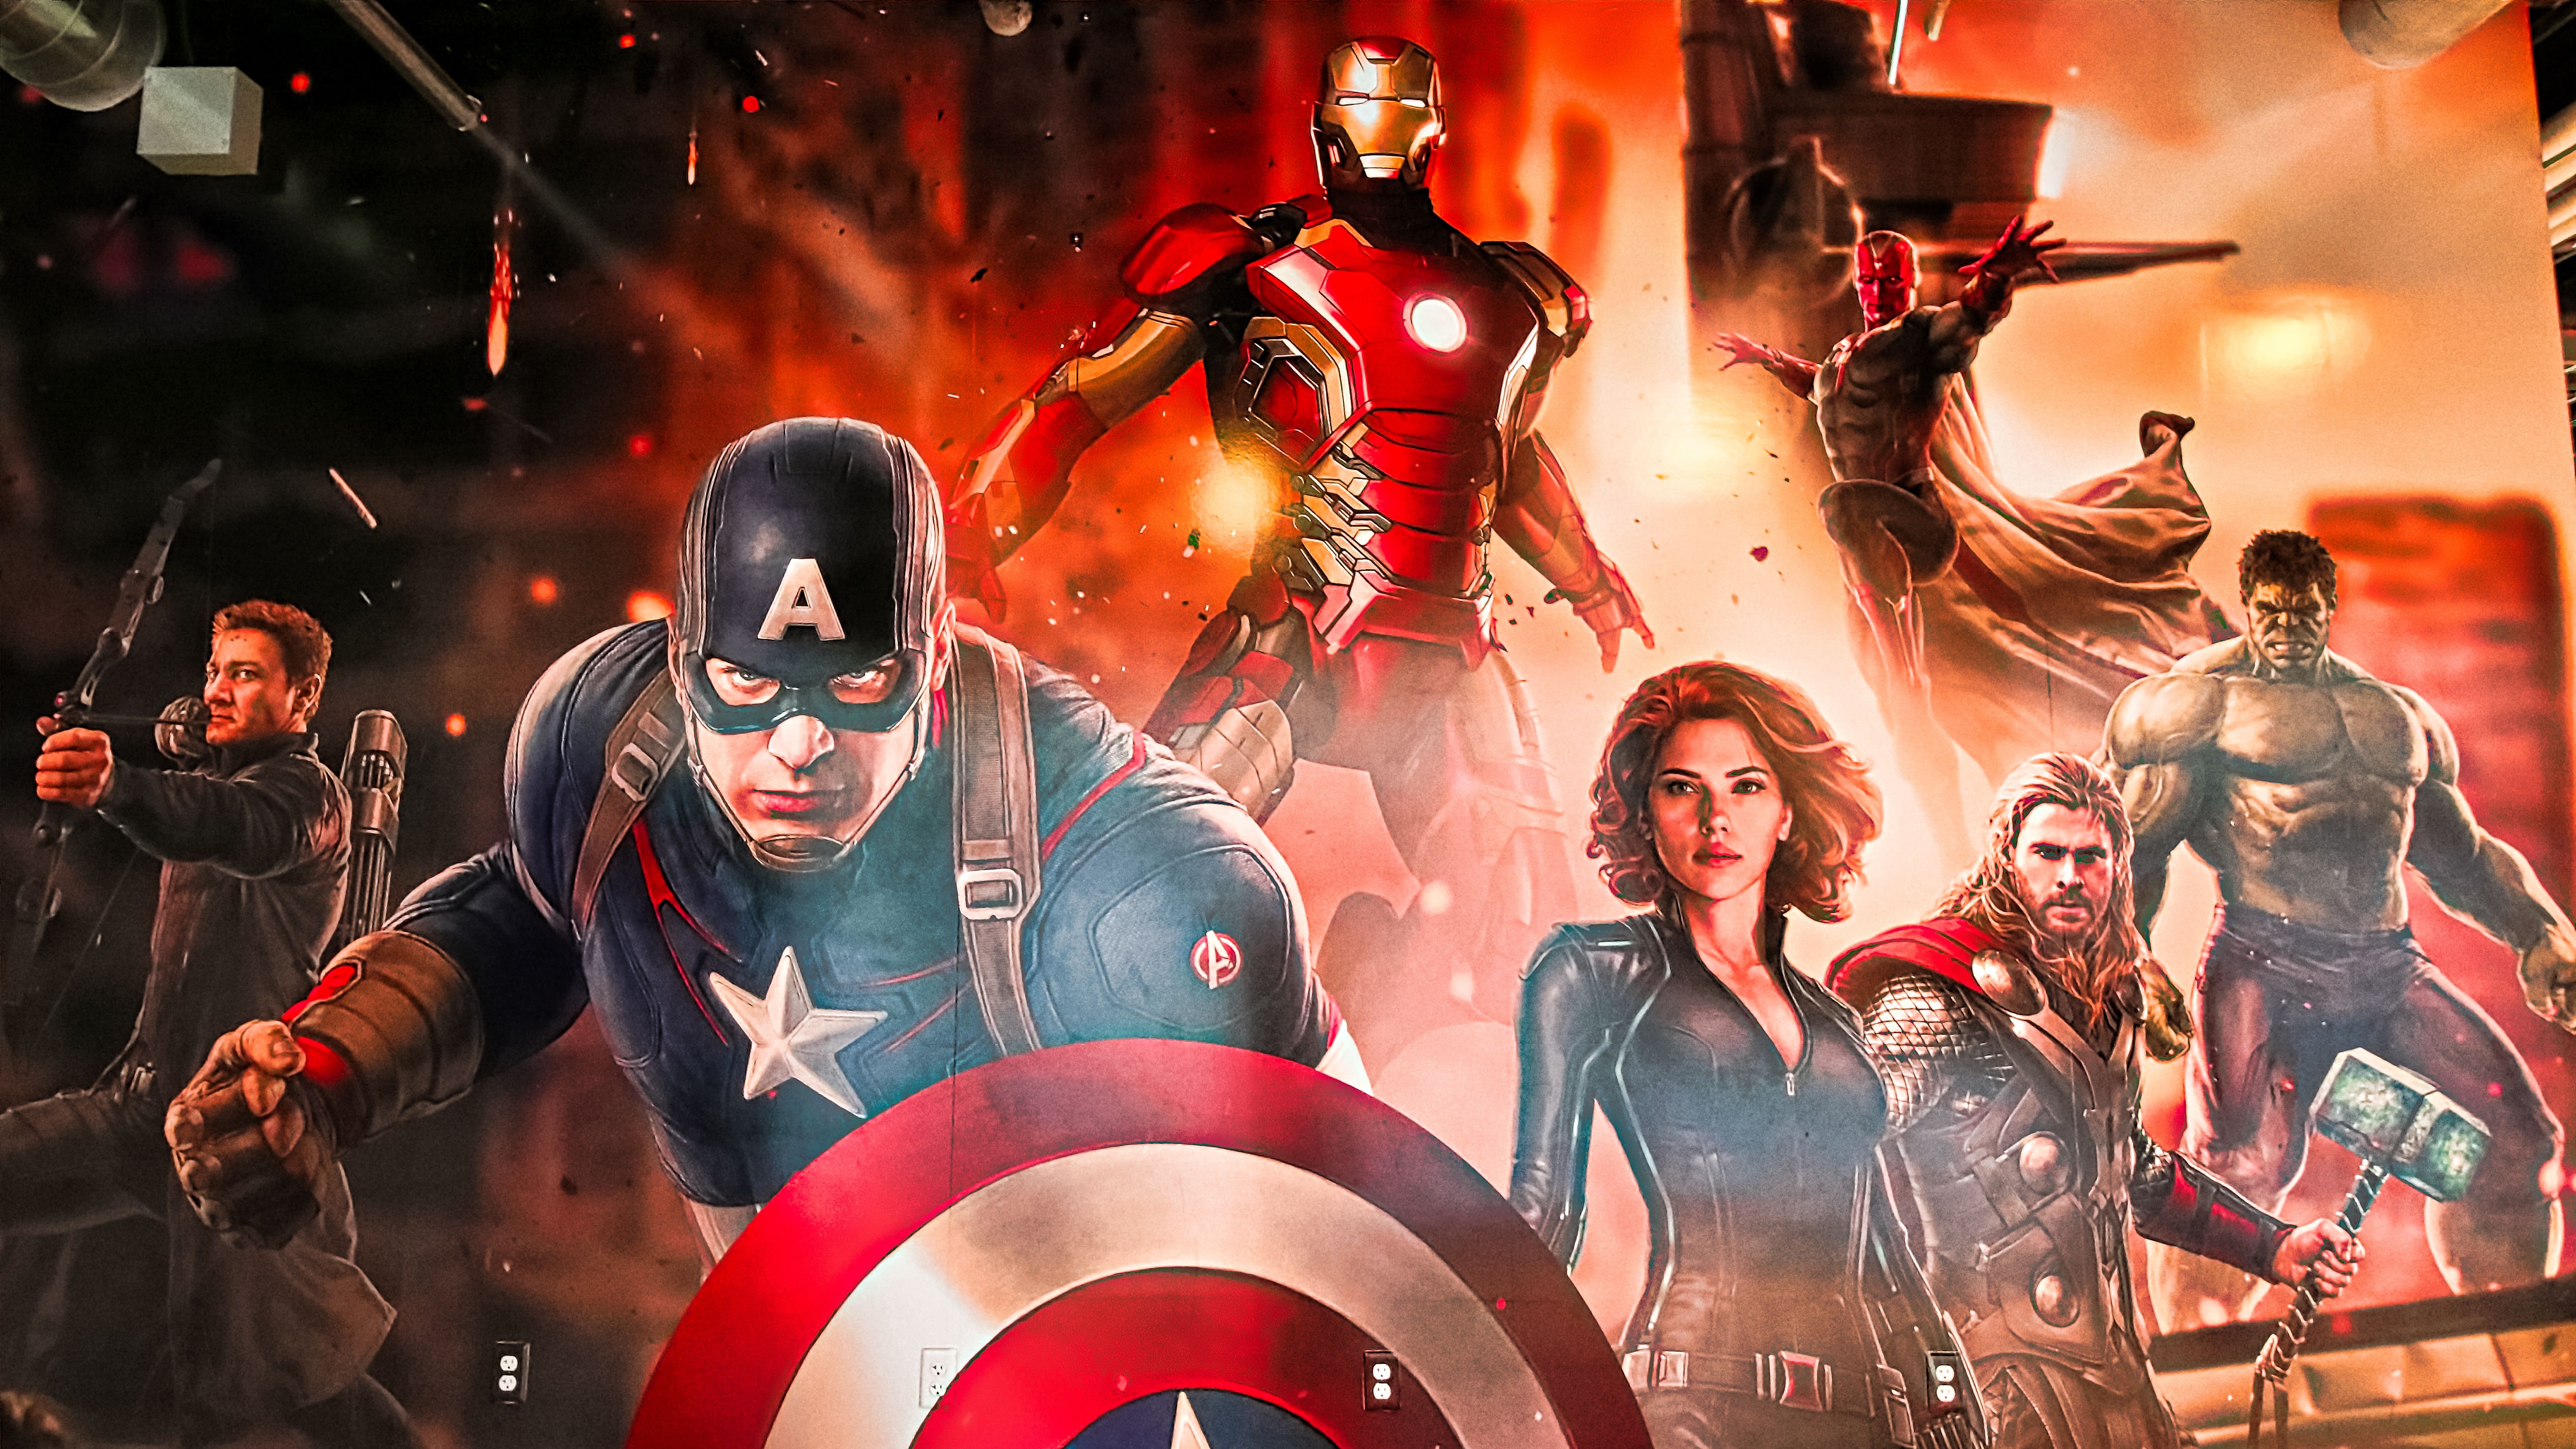 Personagens da Marvel reunidos: Gavião Arqueiro, Capitão América, Homem de Ferro, Viúva Negra, Thor, Hulk e Visão.